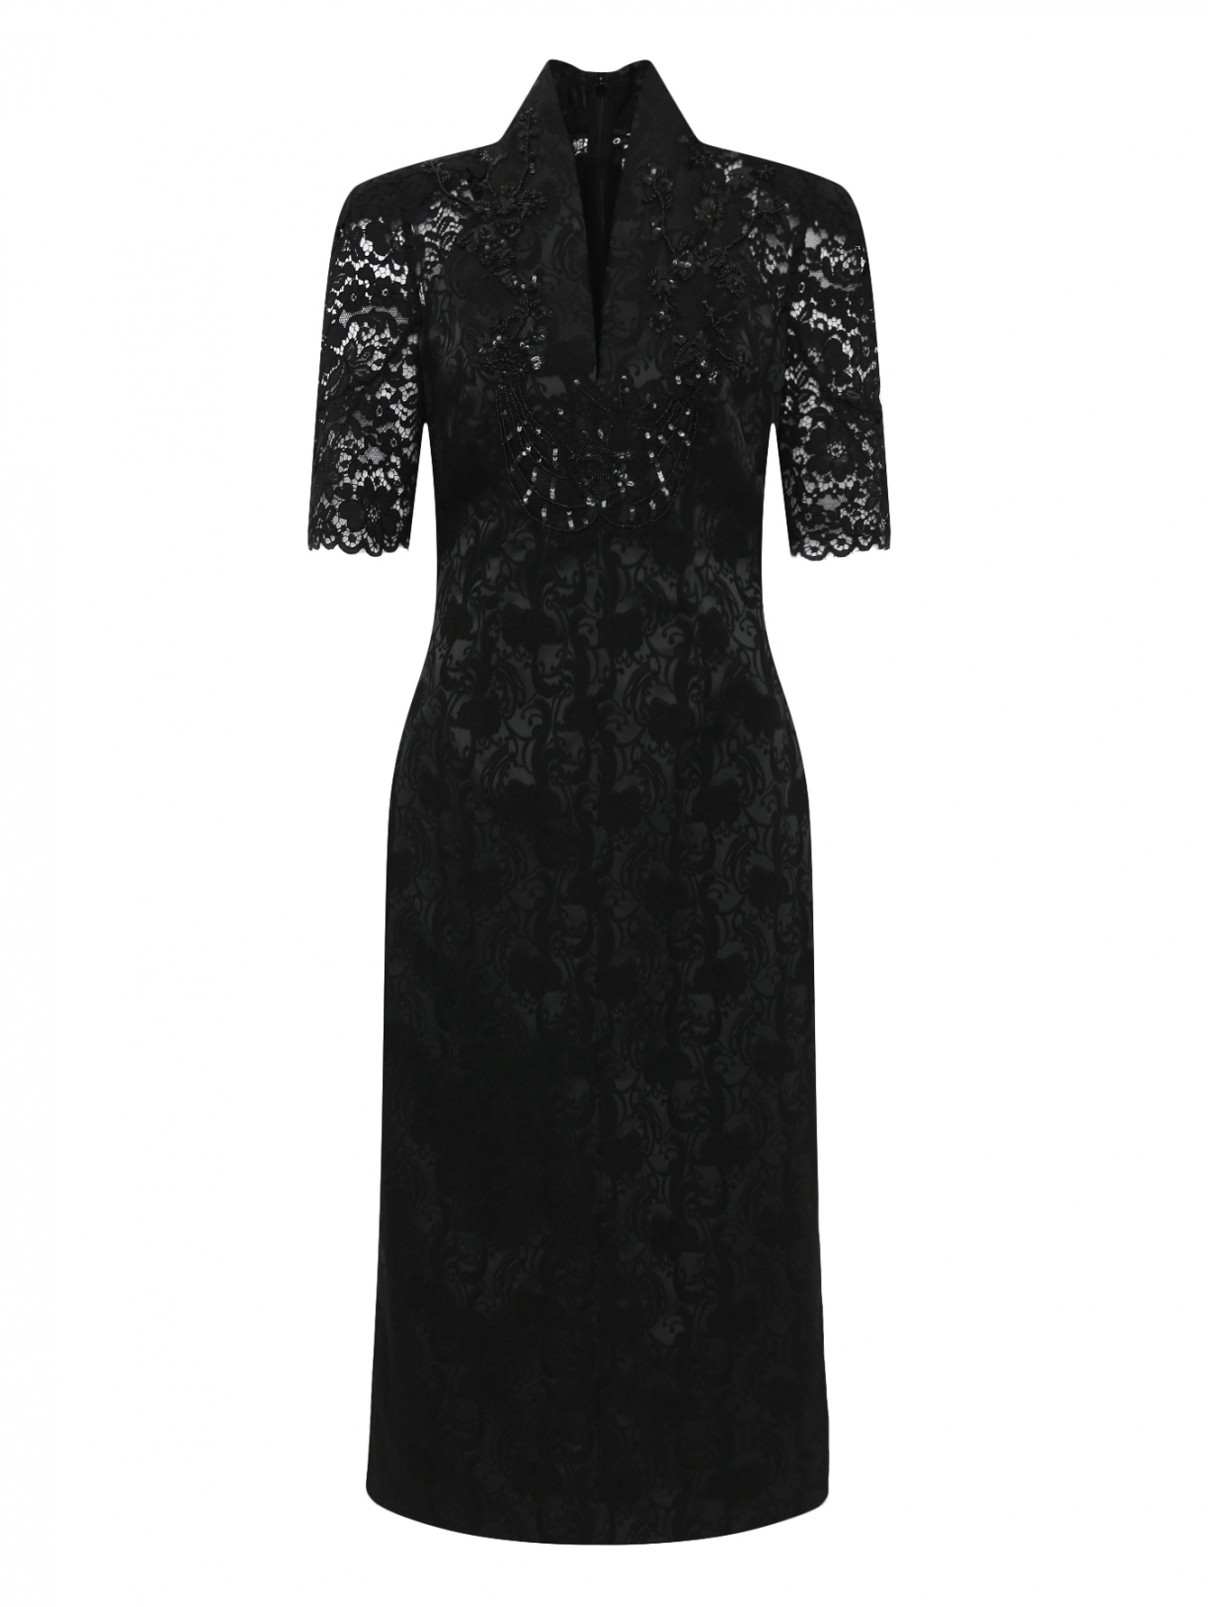 Платье декорированное пайетками и бисером Antonio Marras  –  Общий вид  – Цвет:  Черный